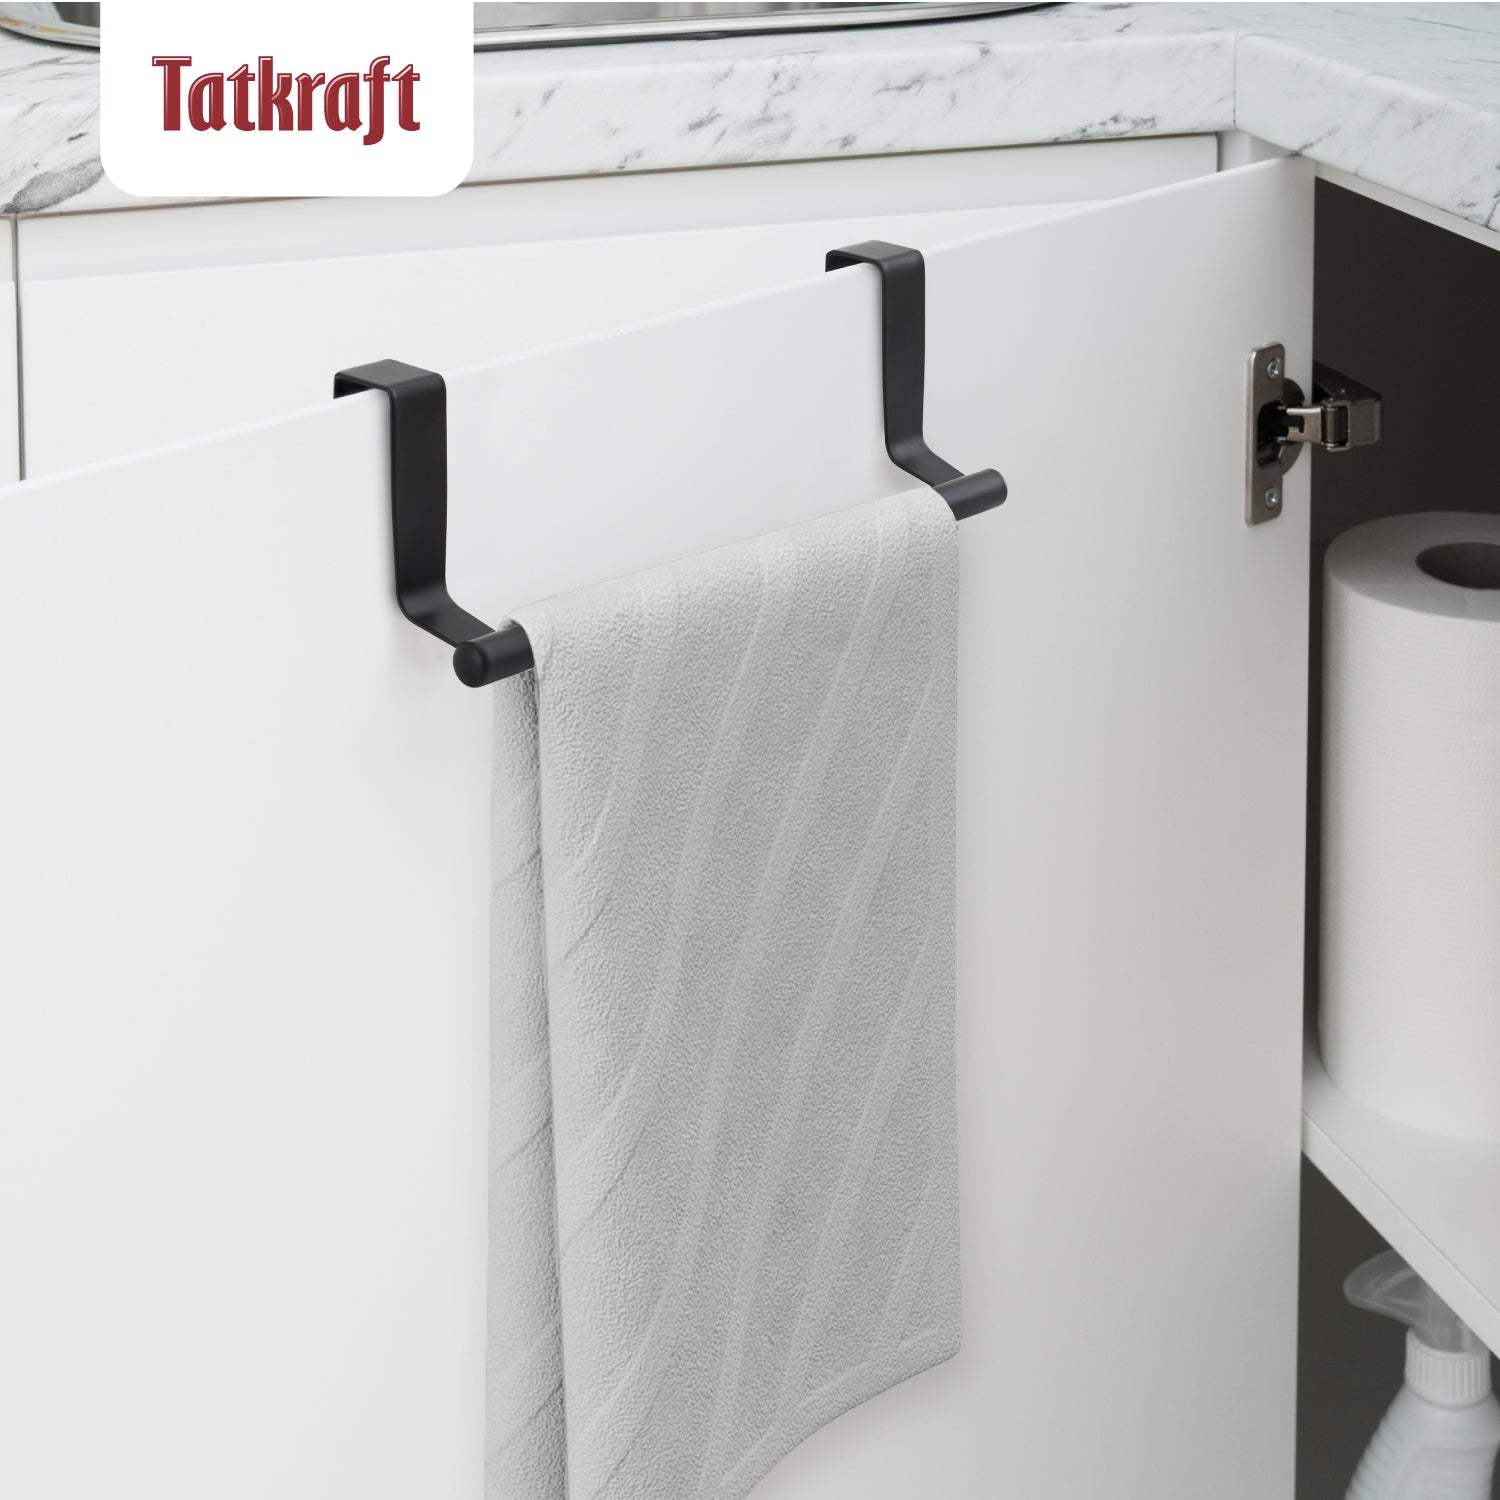 Over Door Towel Rail, Over the Door Towel Rail, Towel Holder for Cupboard Drawer Cabinet,  Tatkraft Horizon Black, 5